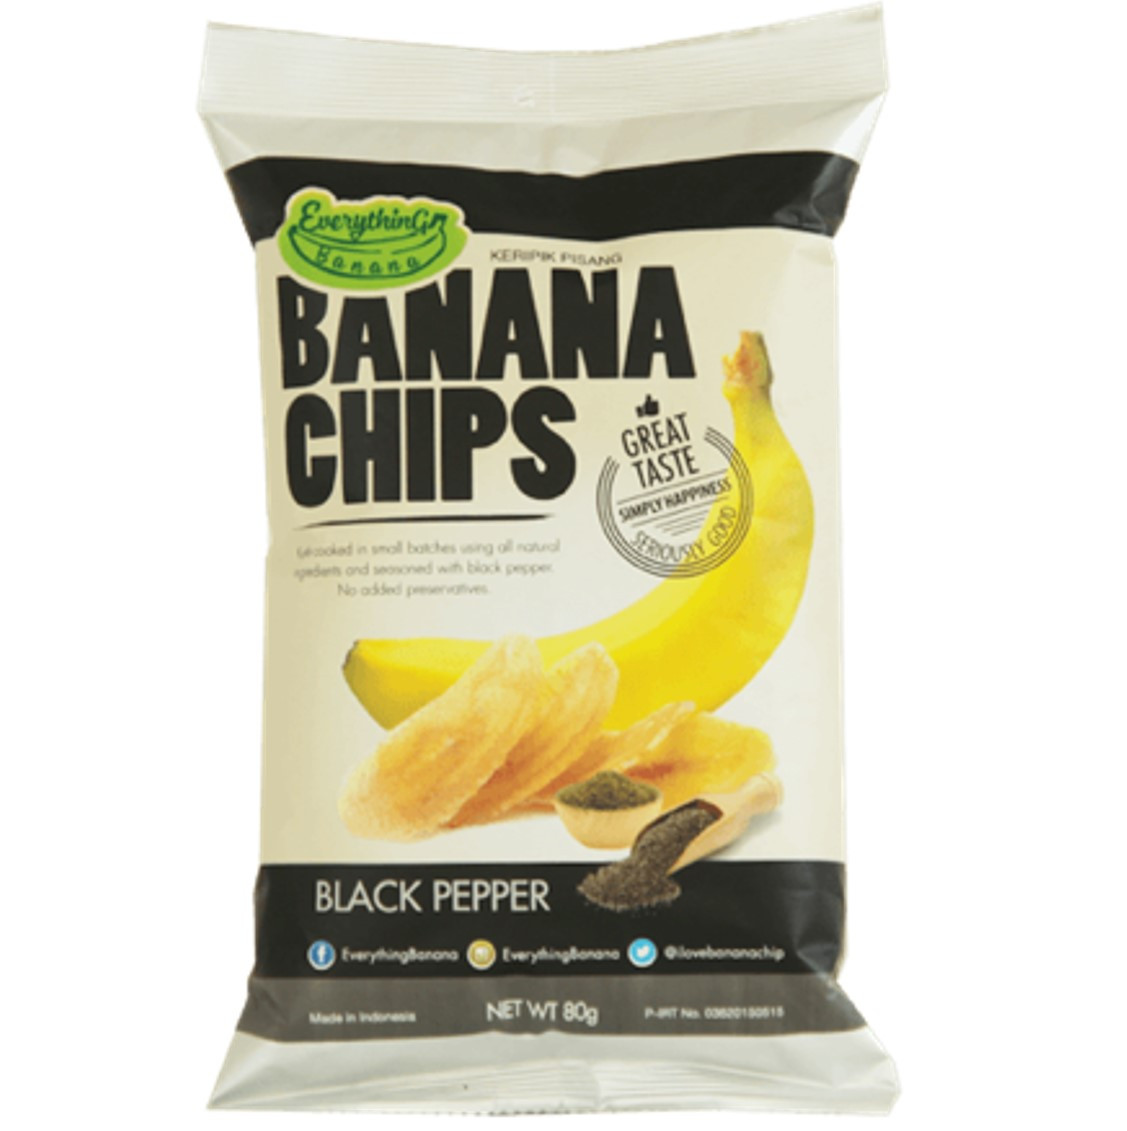 Everything Banana Chips - Black Pepper, 80g